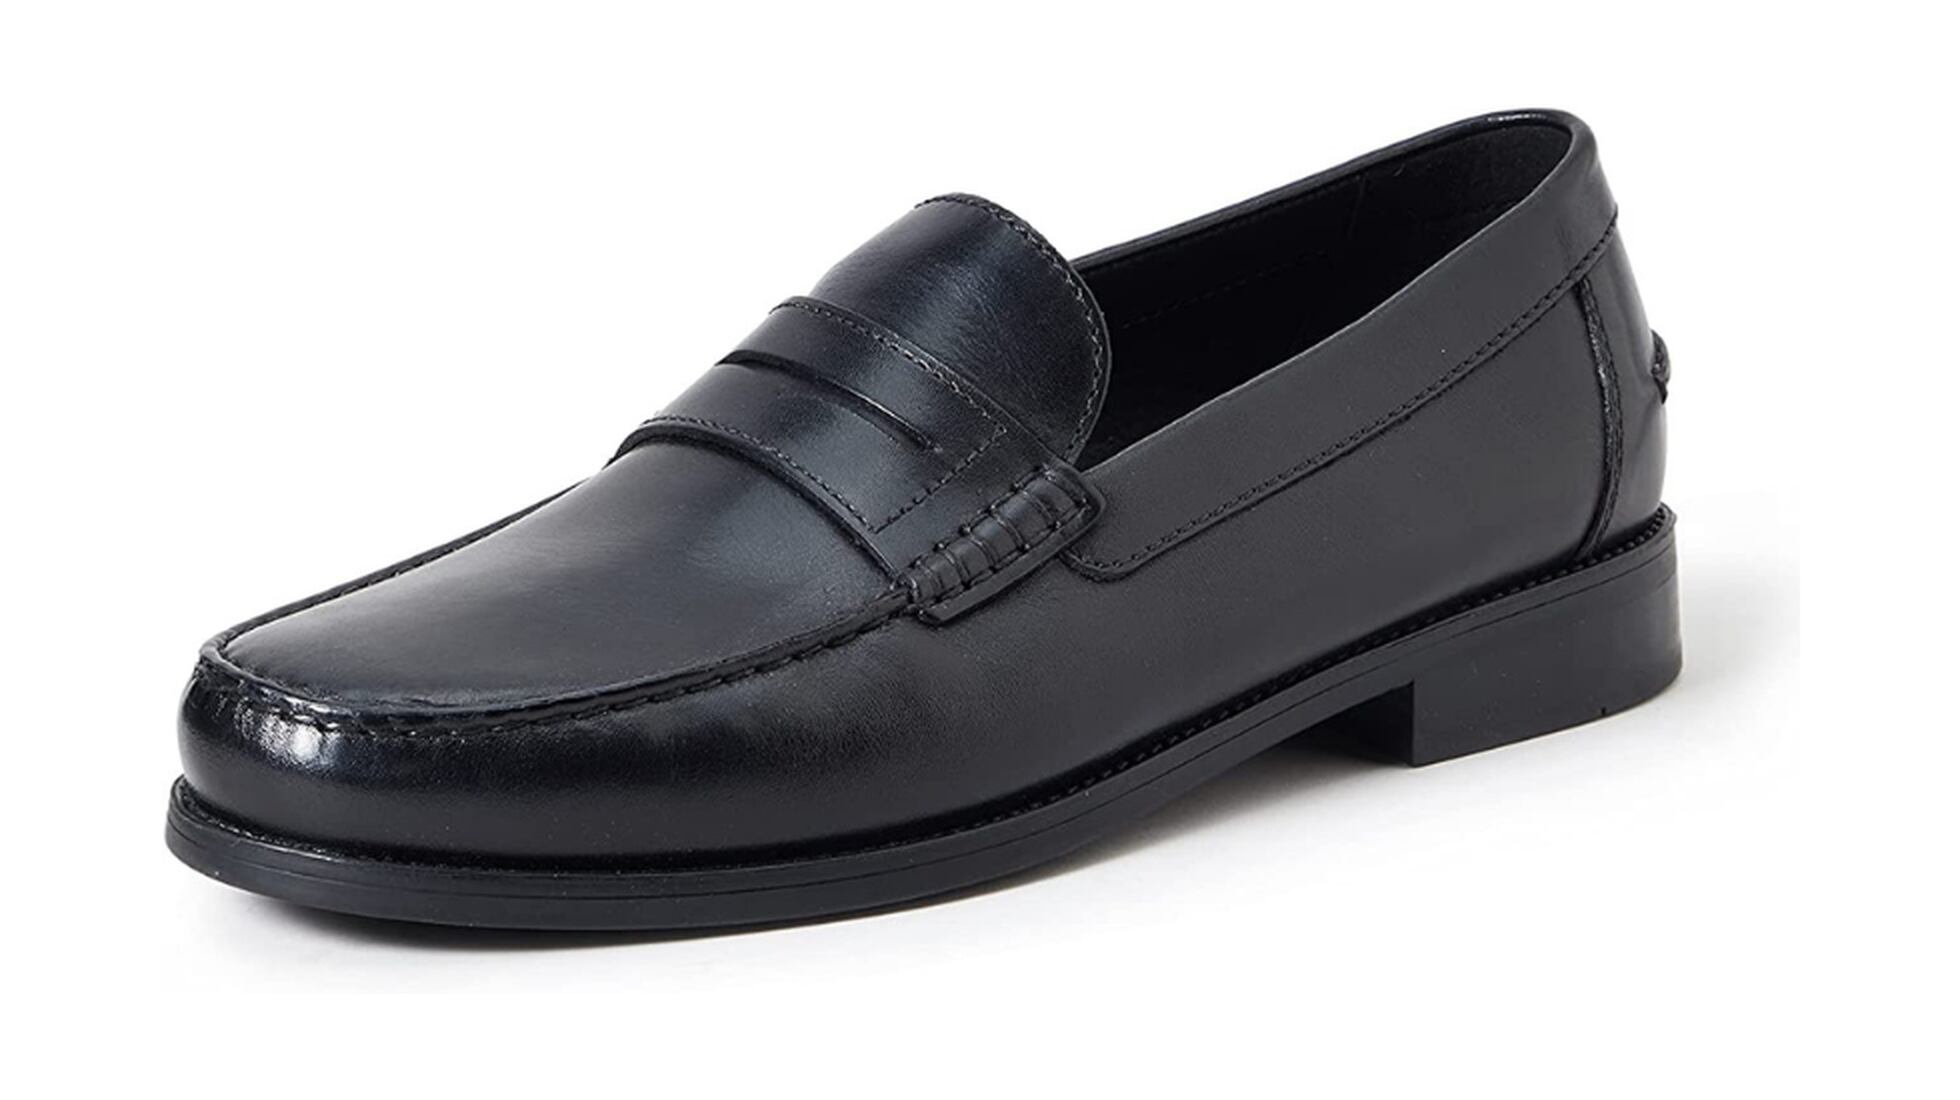 Zapatos de Hombre para Vestir sin cordón color Negro